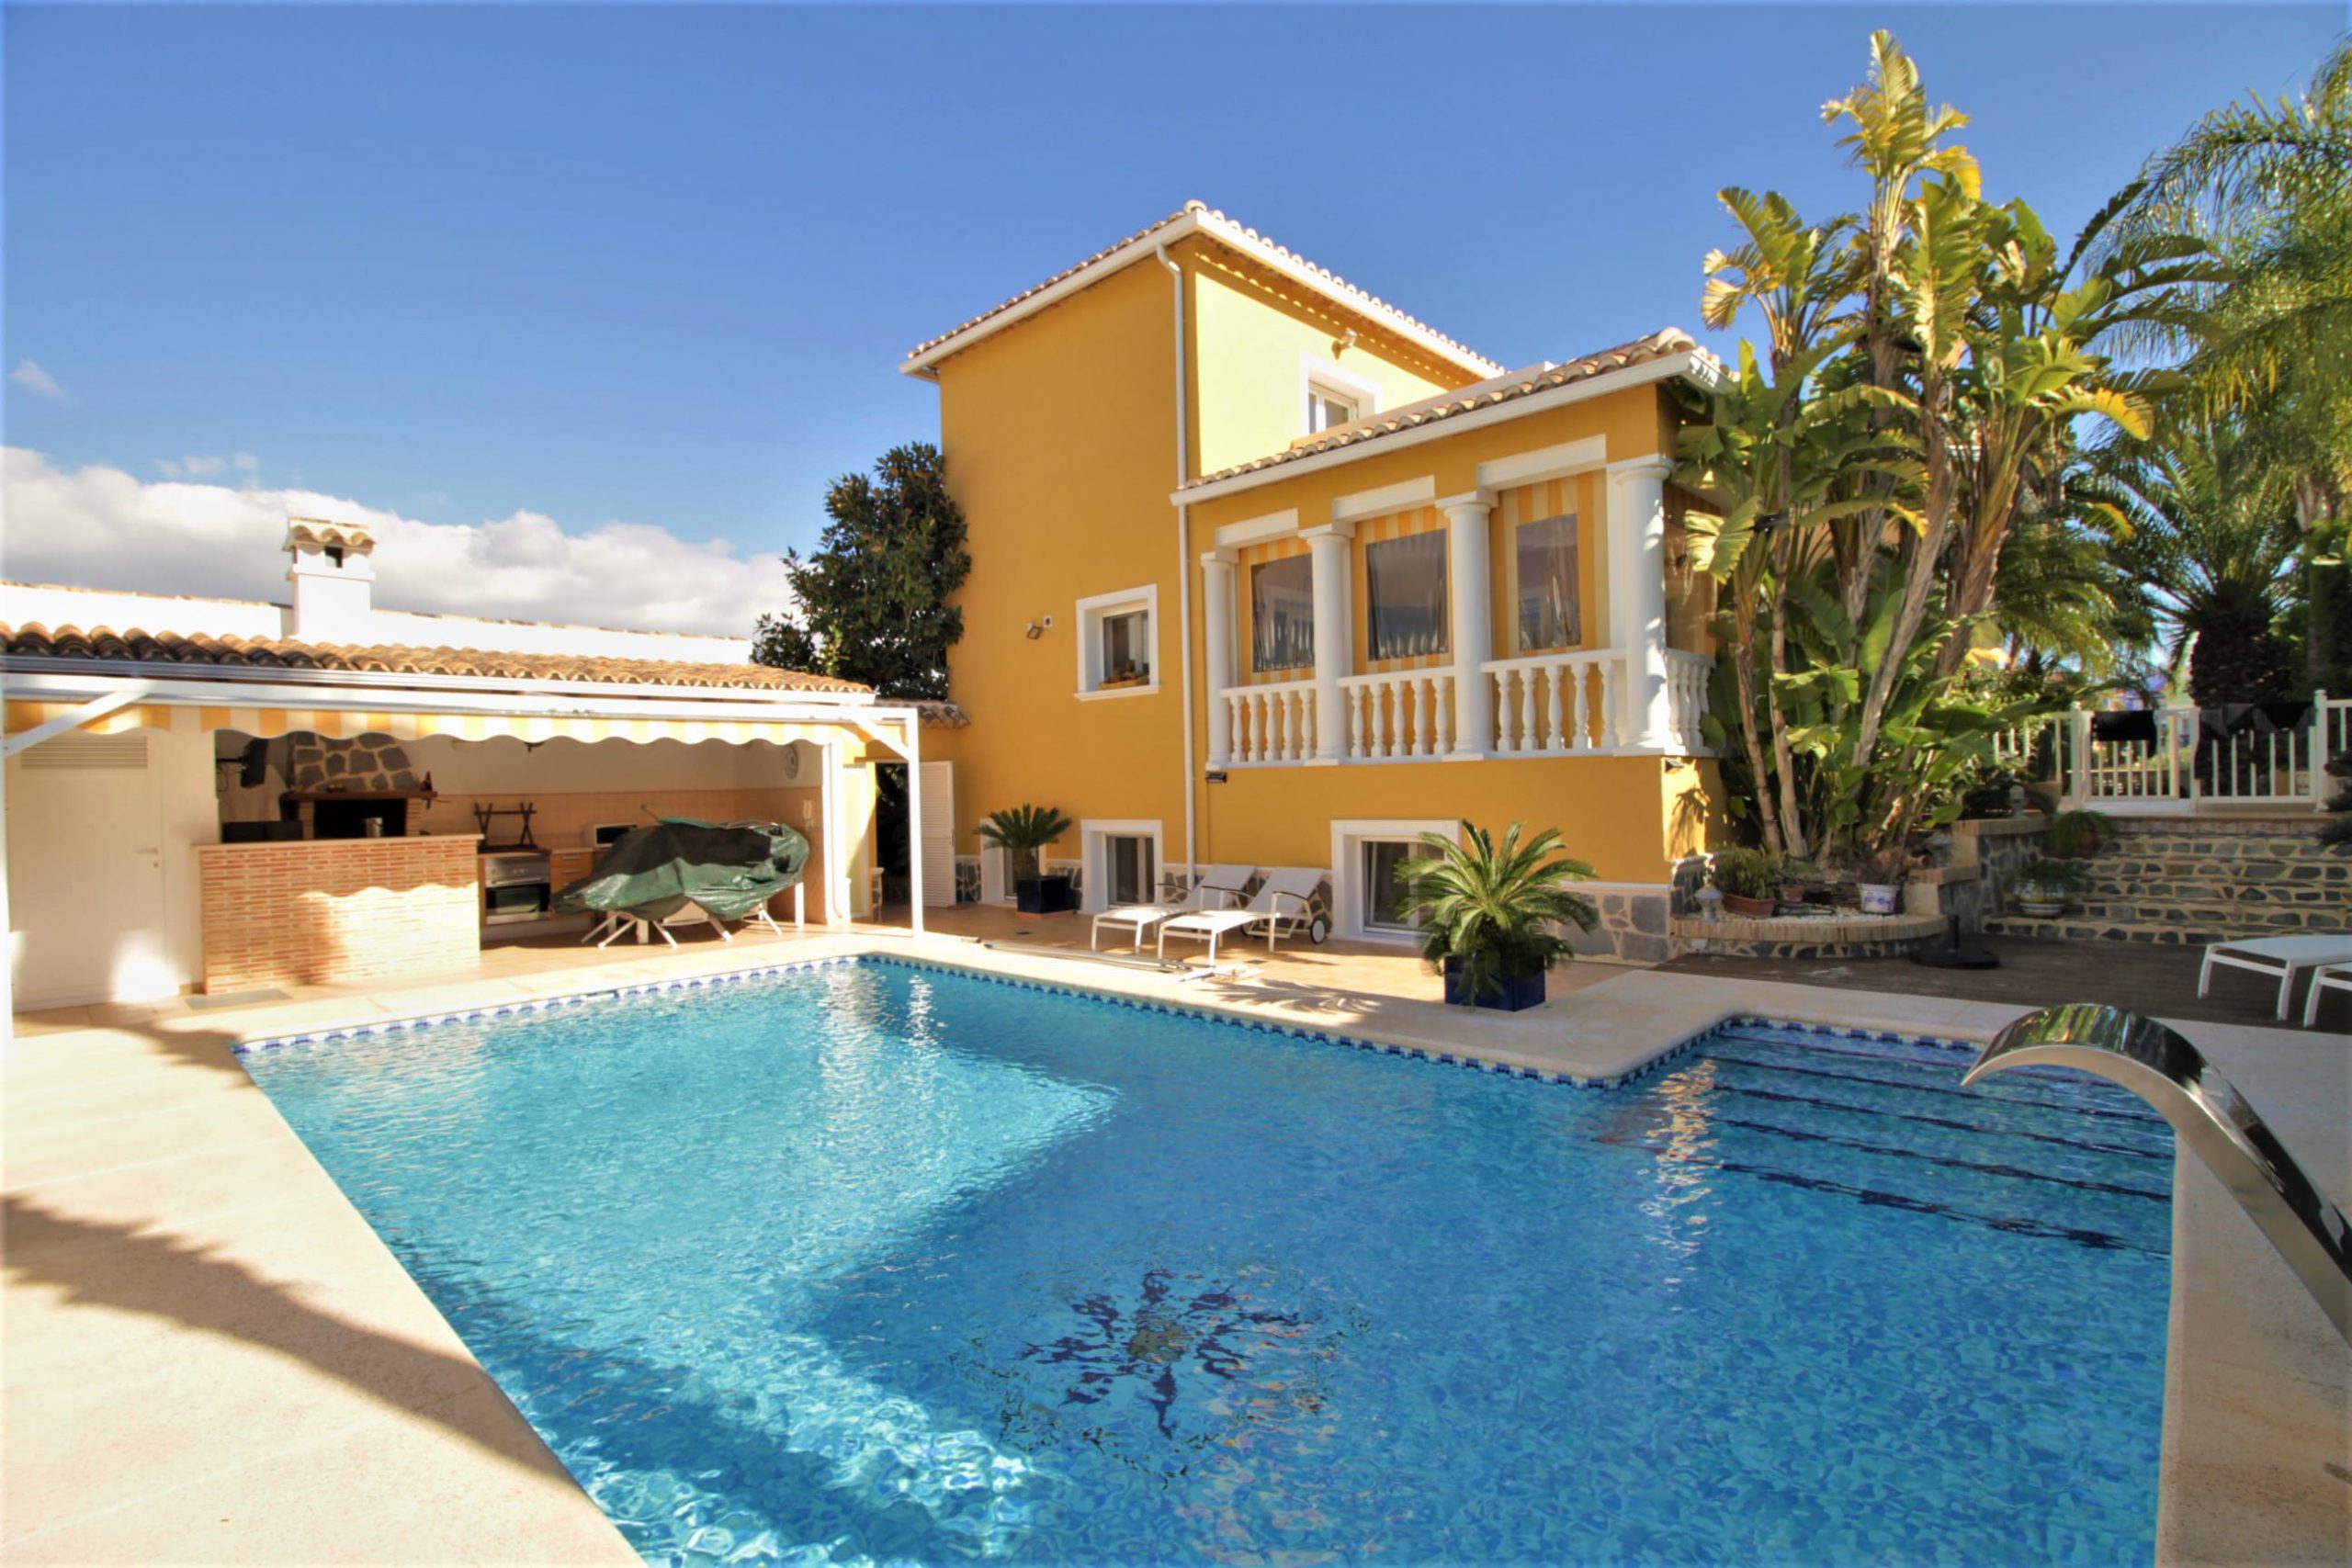 Mediterranean style villa in Calpe